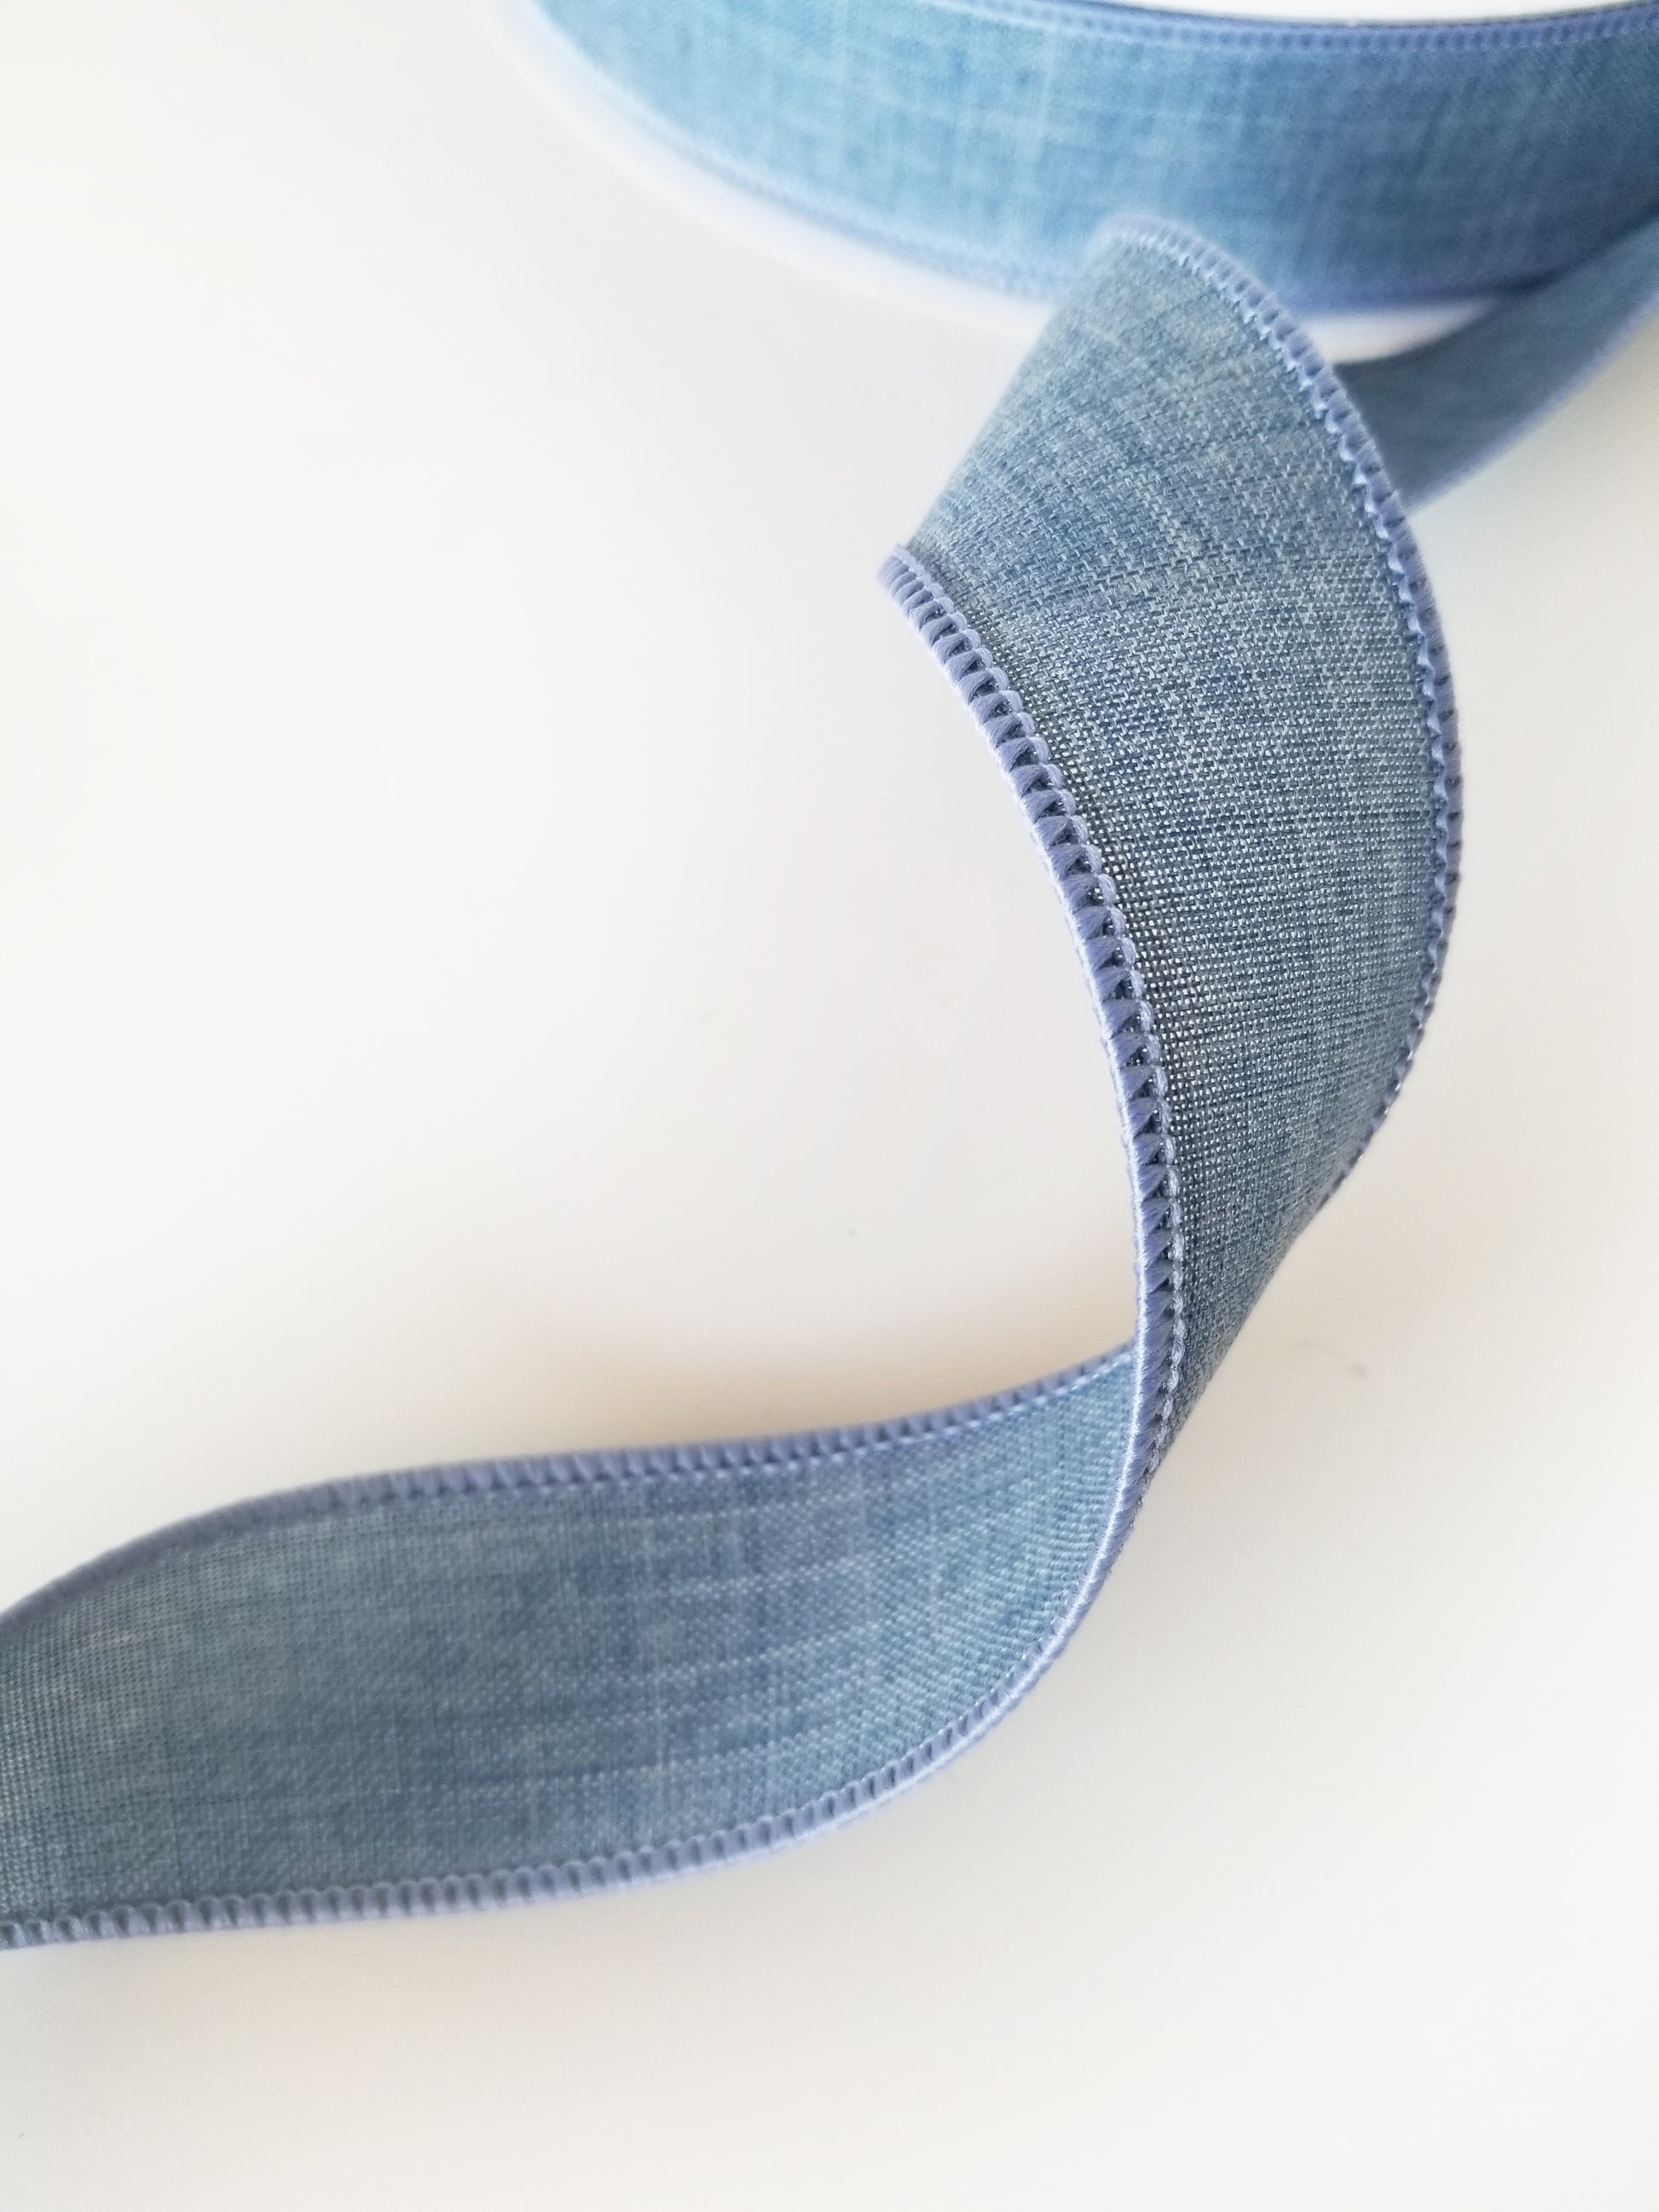 1.5" Denim Solid Ribbon | 50 Yards - Designer DIY